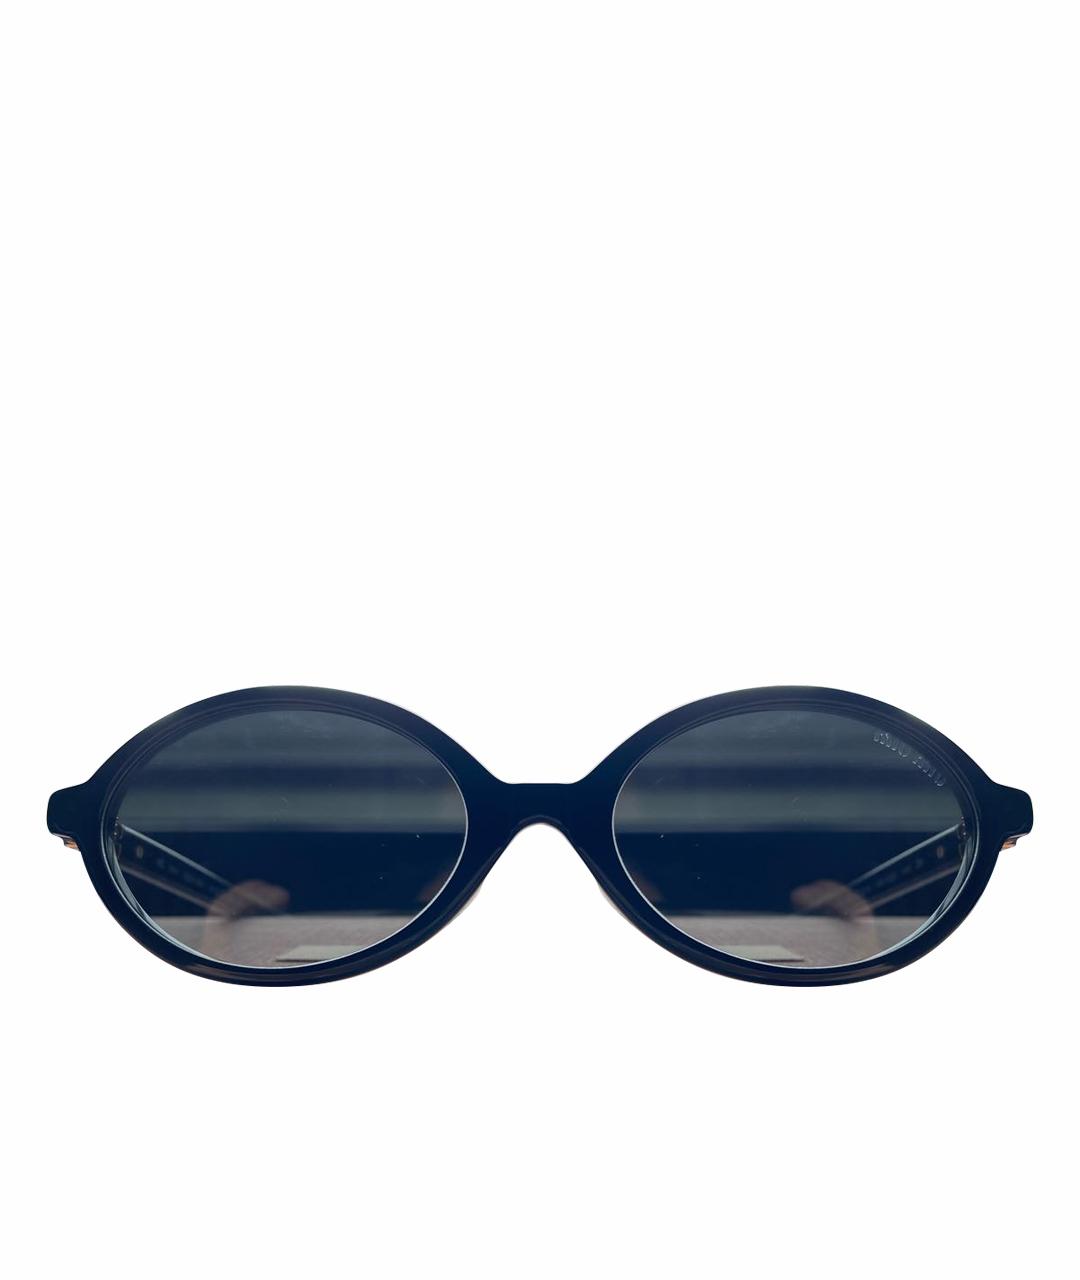 MIU MIU Черные пластиковые солнцезащитные очки, фото 1